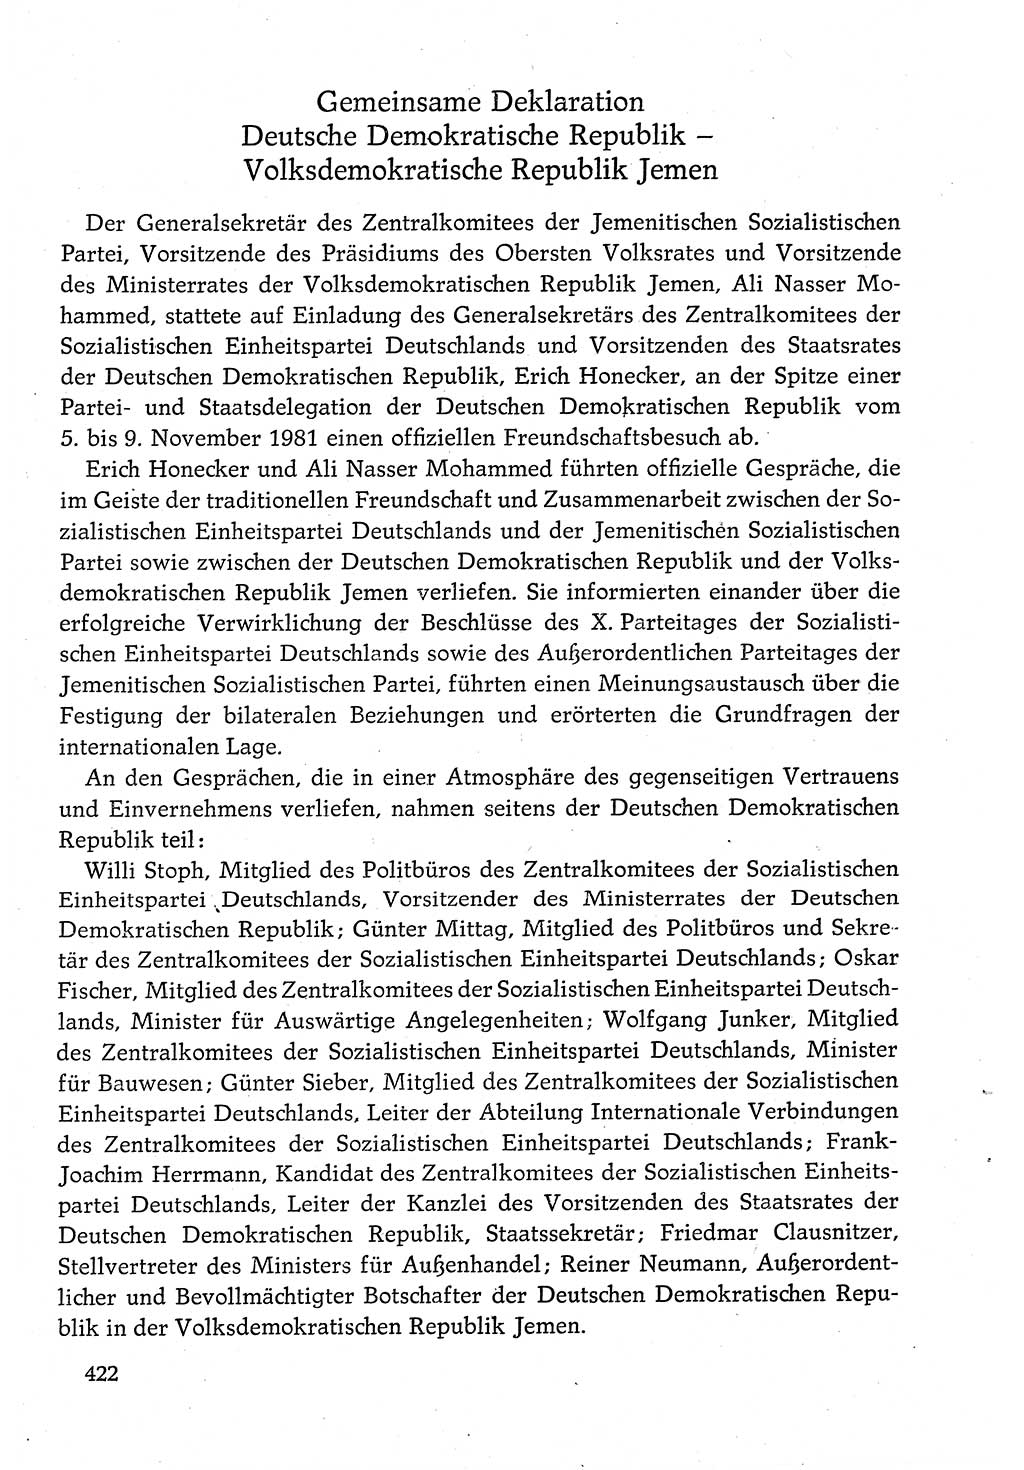 Dokumente der Sozialistischen Einheitspartei Deutschlands (SED) [Deutsche Demokratische Republik (DDR)] 1980-1981, Seite 422 (Dok. SED DDR 1980-1981, S. 422)